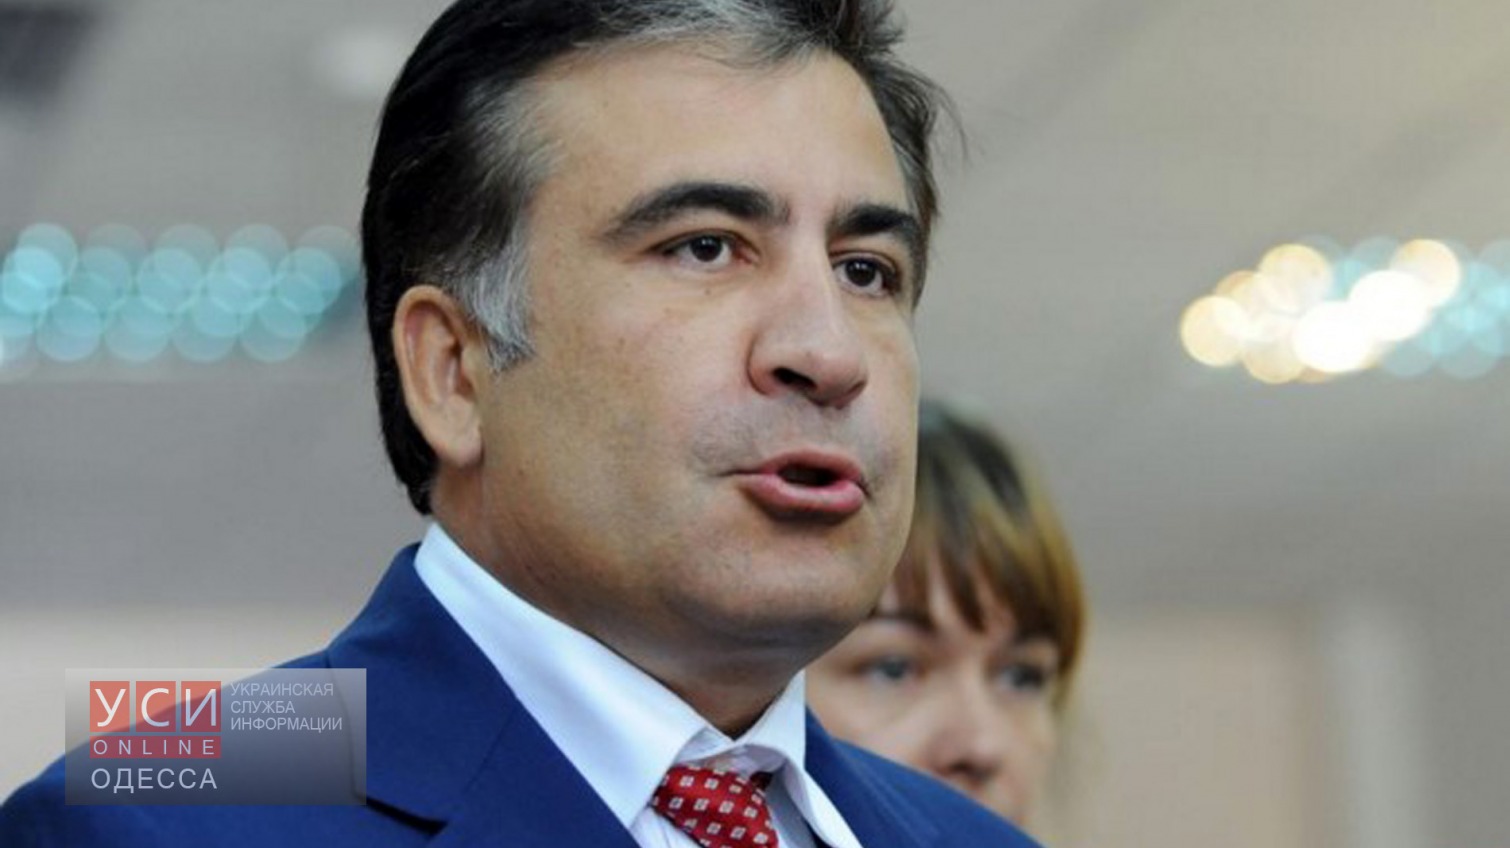 Саакашвили замахнулся на украинскую госсобственность «фото»